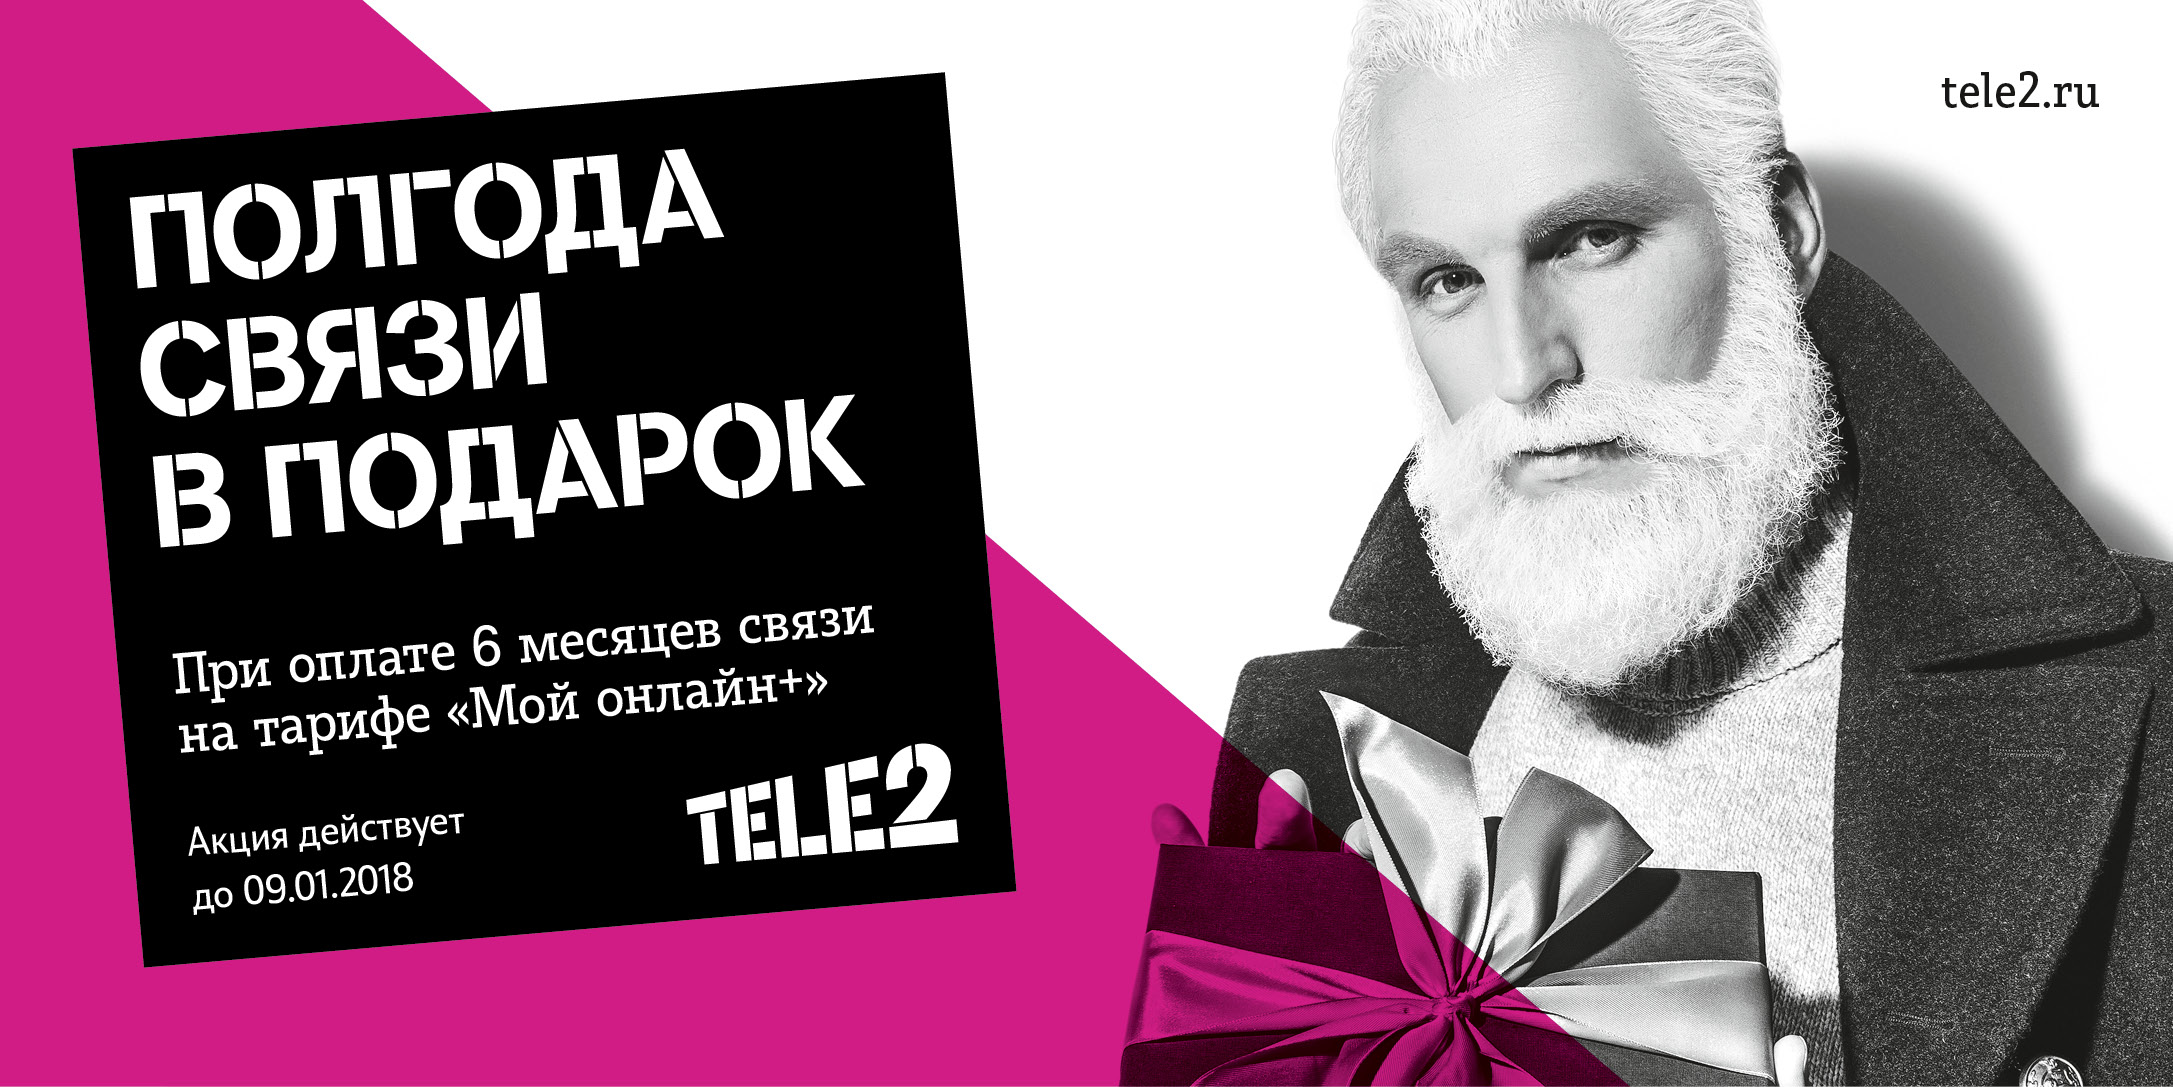 Tele2_Santa